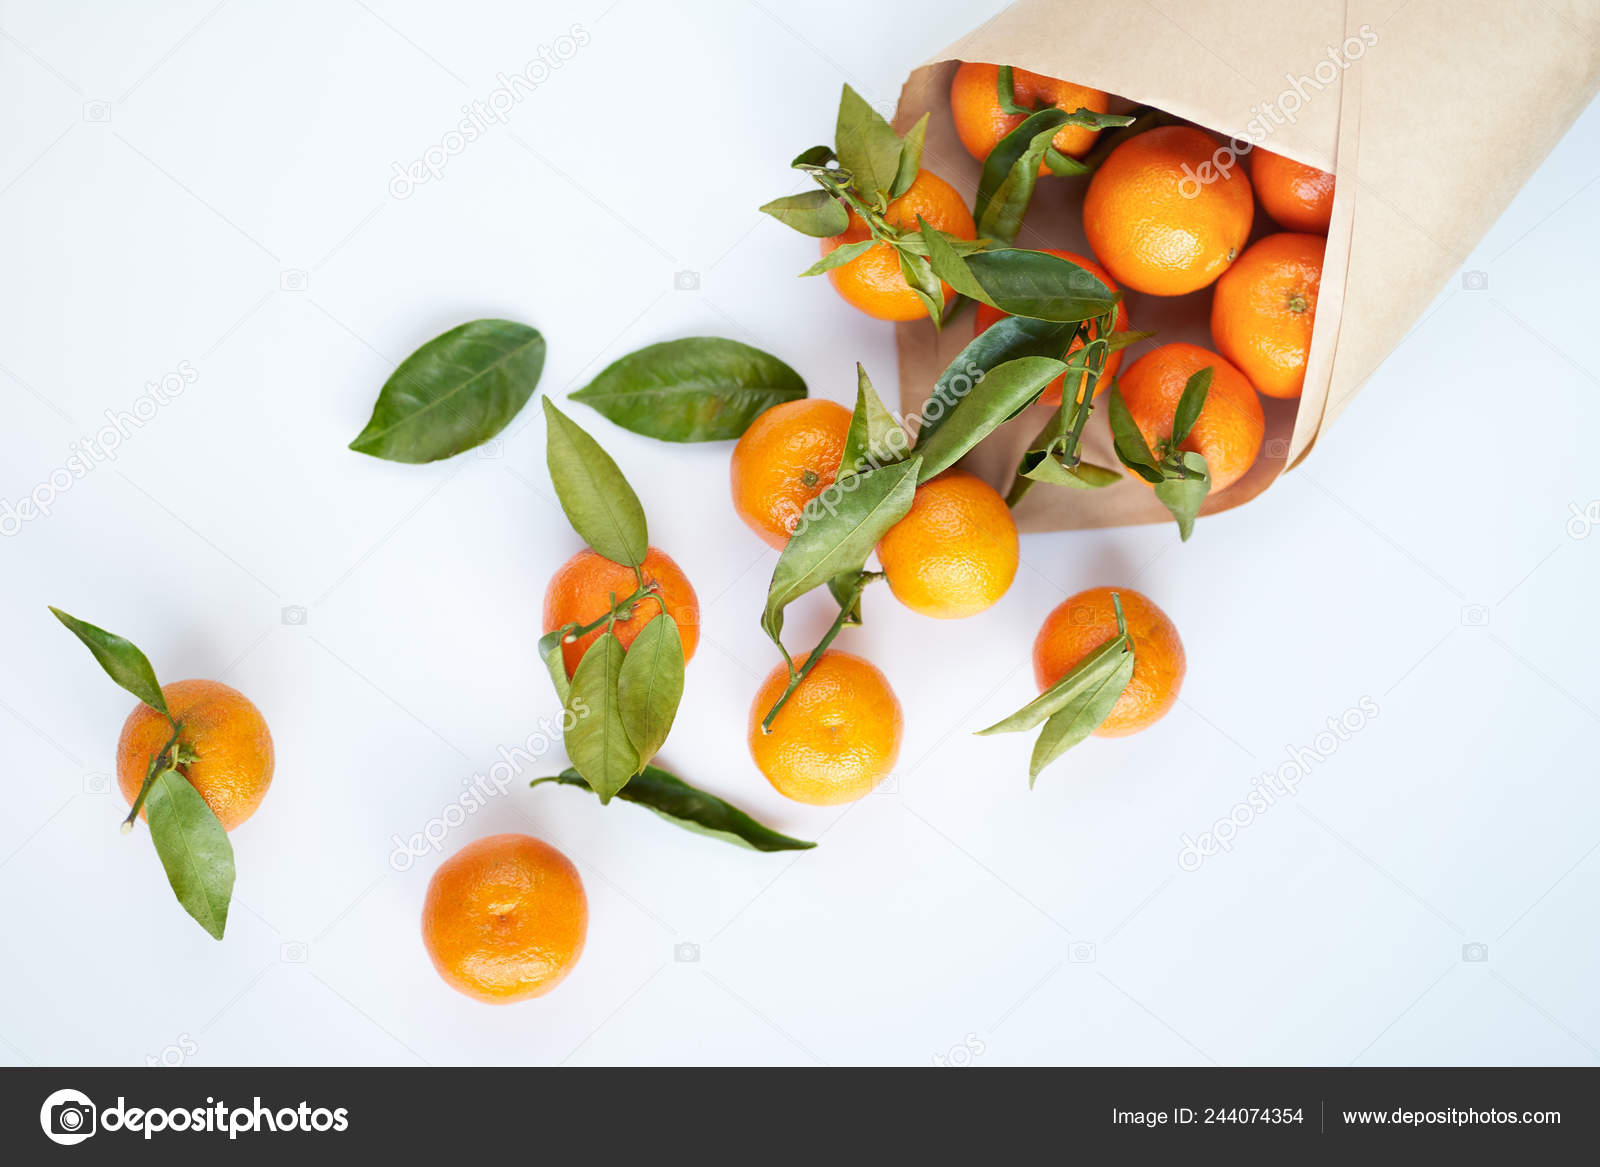 https://st4.depositphotos.com/6753838/24407/i/1600/depositphotos_244074354-stock-photo-orange-fresh-tangerines-green-leaves.jpg